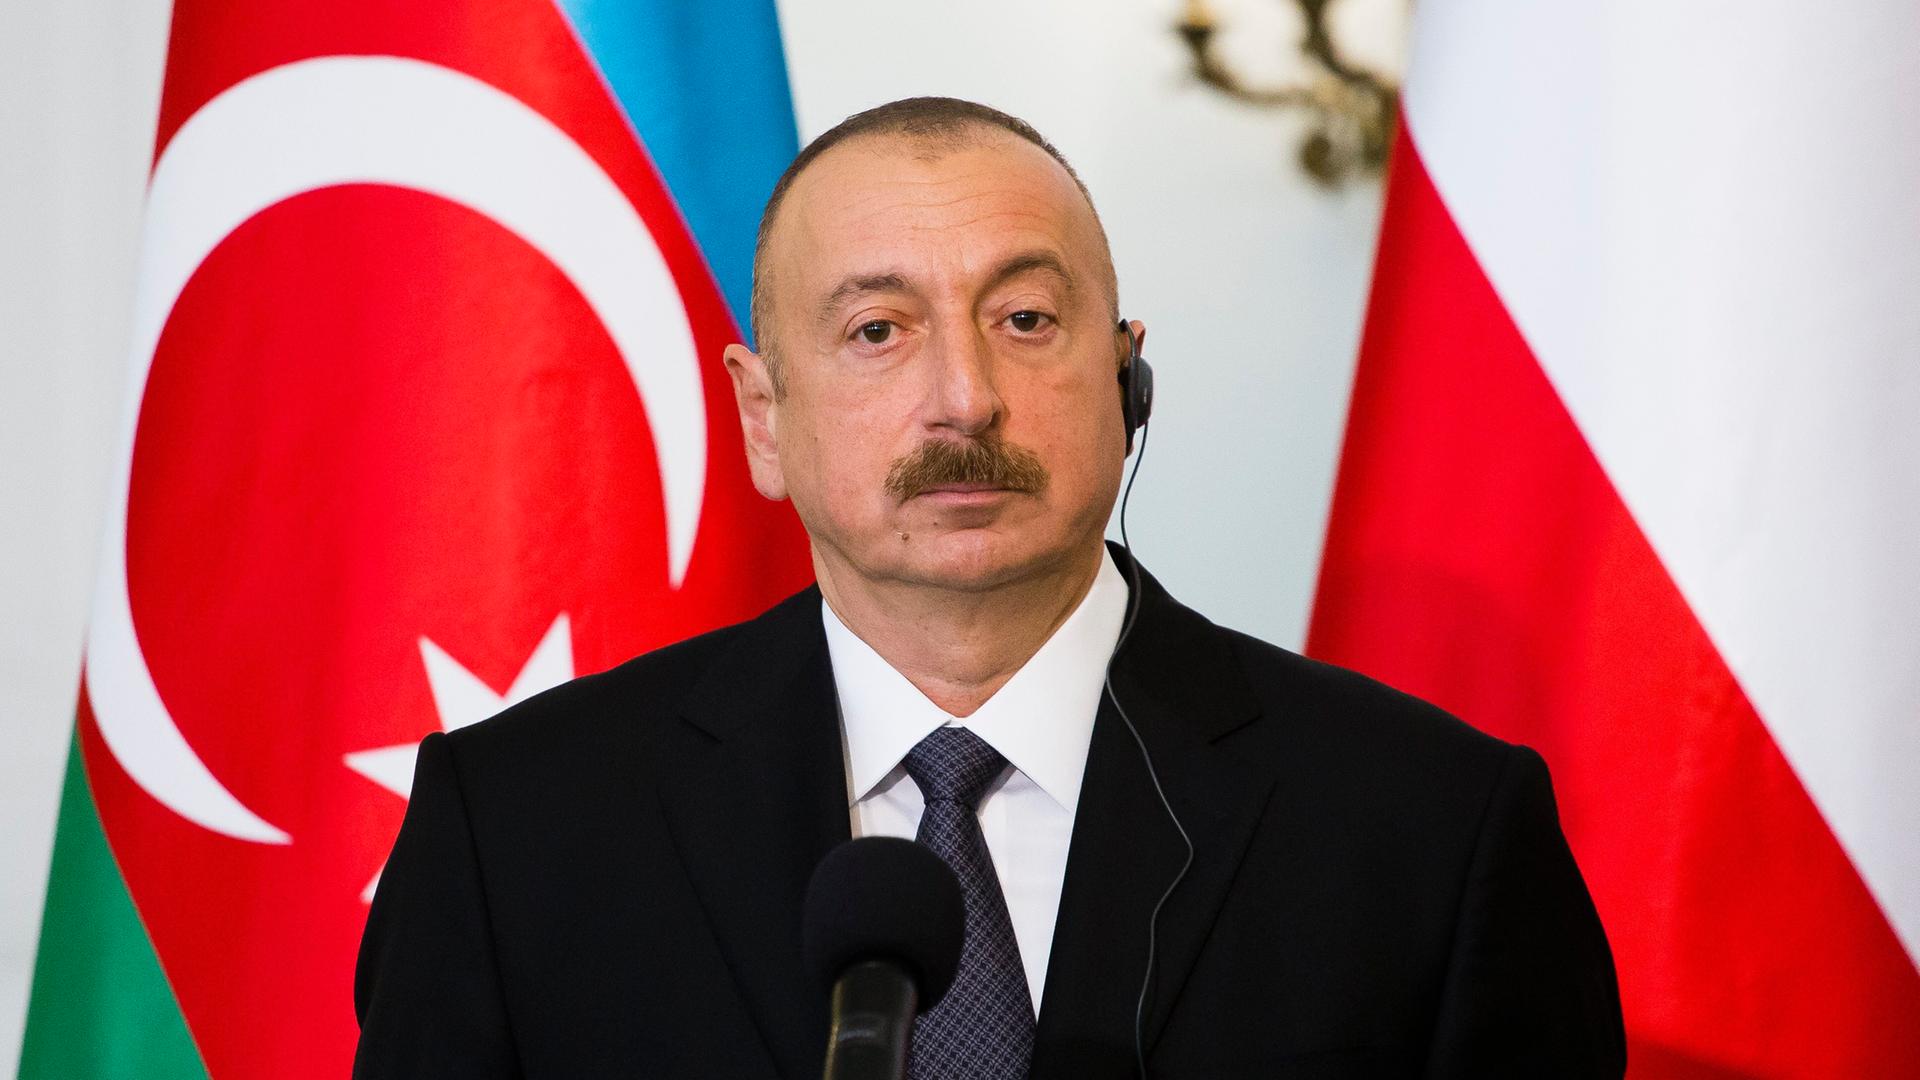 Der aserbaidschanische Präsident Ilham Alijew steht vor Flaggen.